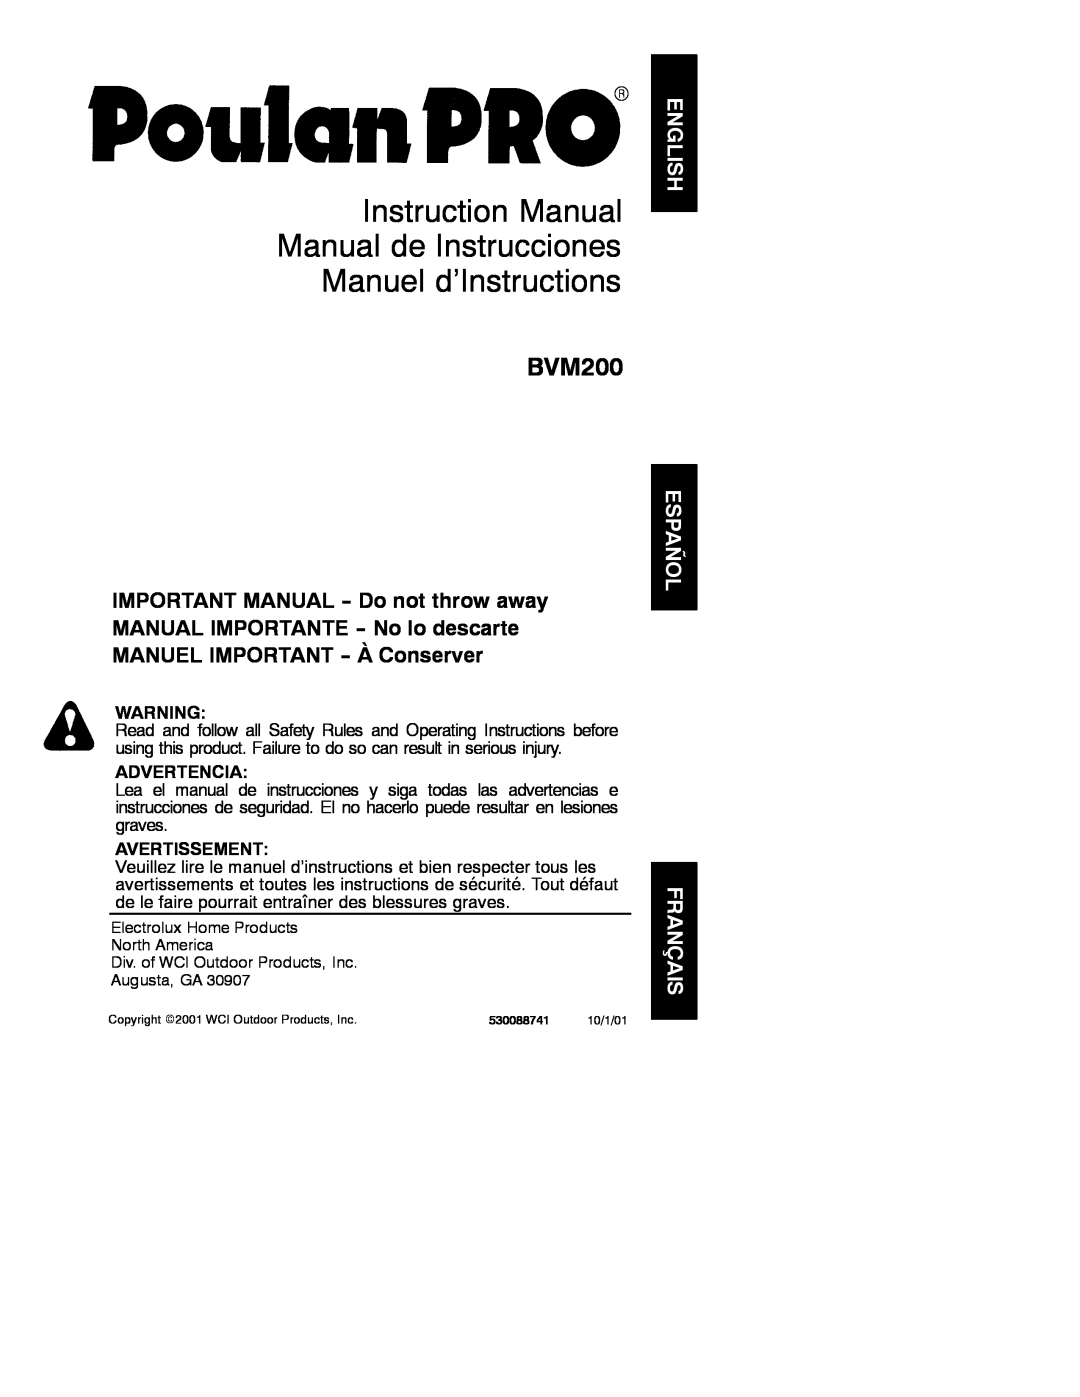 Poulan 530088741 instruction manual Instruction Manual Manual de Instrucciones Manuel d’Instructions, BVM200, Advertencia 